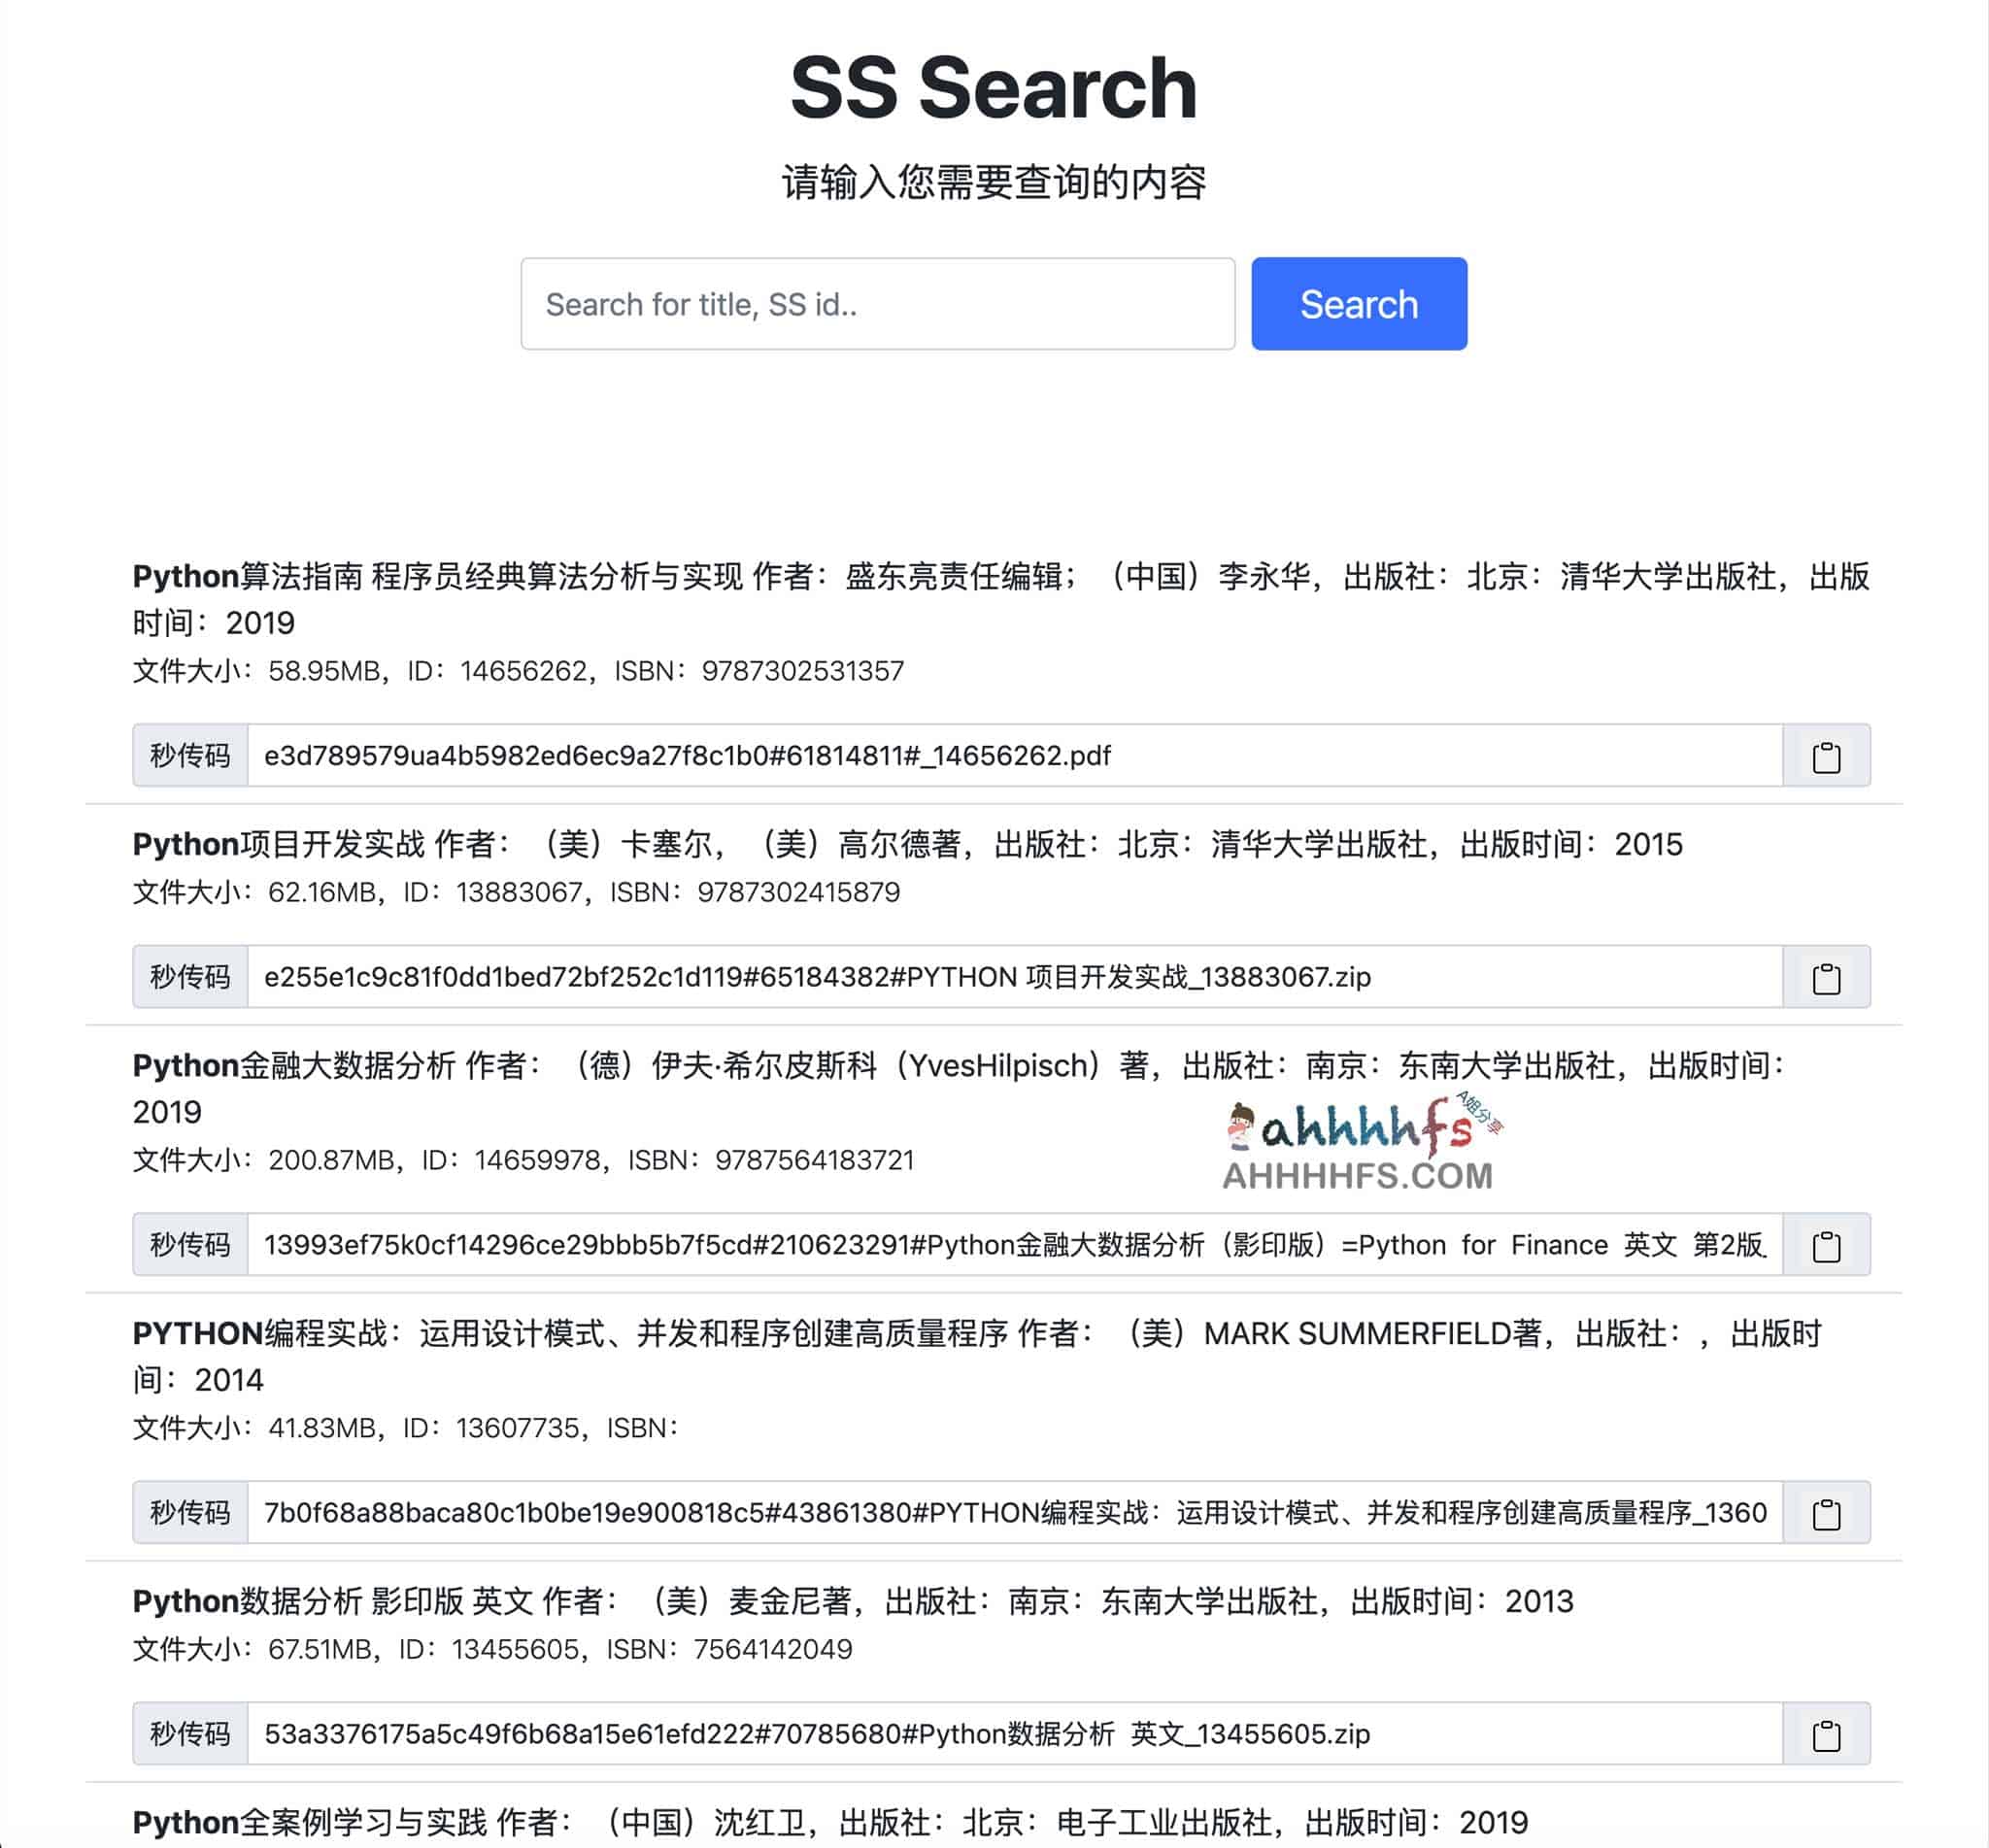 超星书籍检索工具 网盘接口妙传 - SS Search